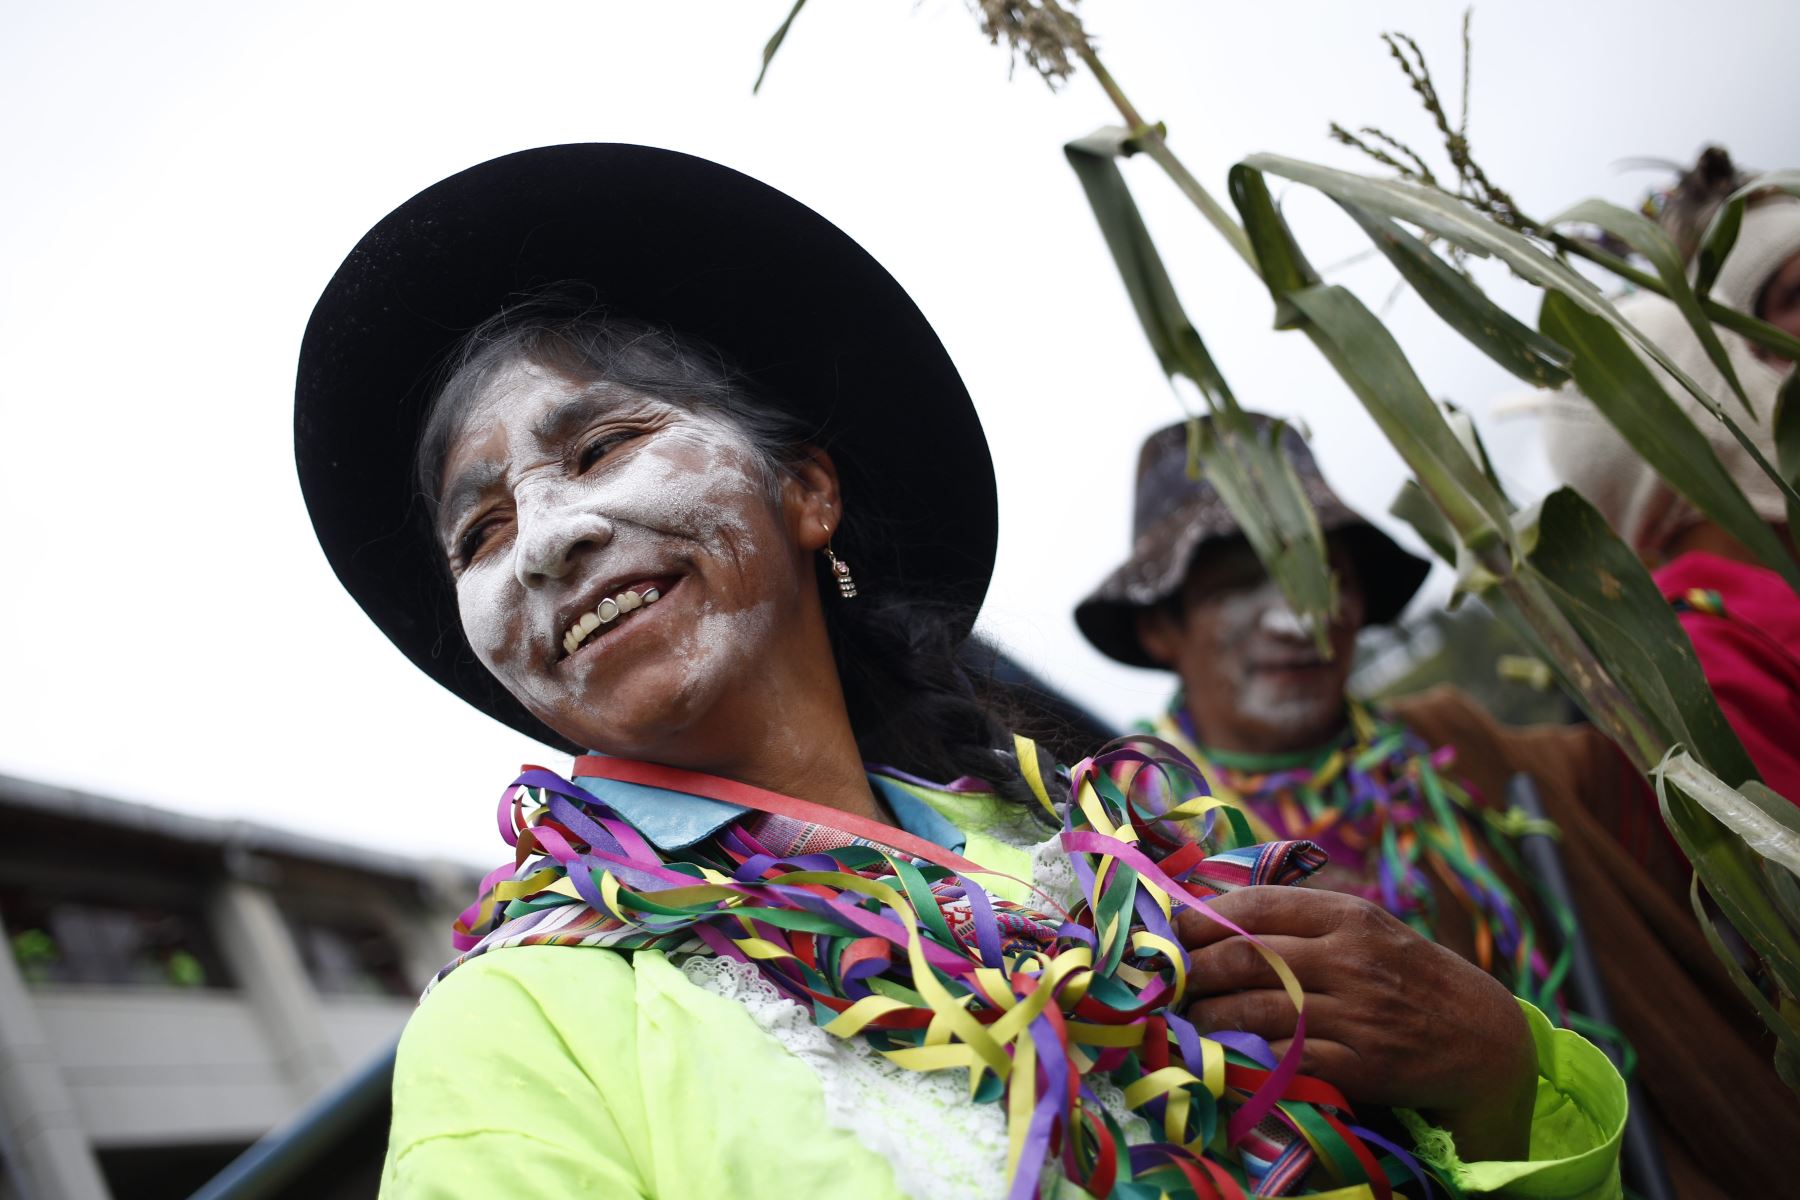 Pukllay es una palabra quechua que en castellano significa “Juegos” y está asociado a los Carnavales, al que las tradiciones folclóricas del ande peruano no han sido ajenas y que se realizan coincidentemente con las festividades de los Carnavales en Andahuaylas. Foto: PROMPERÚ